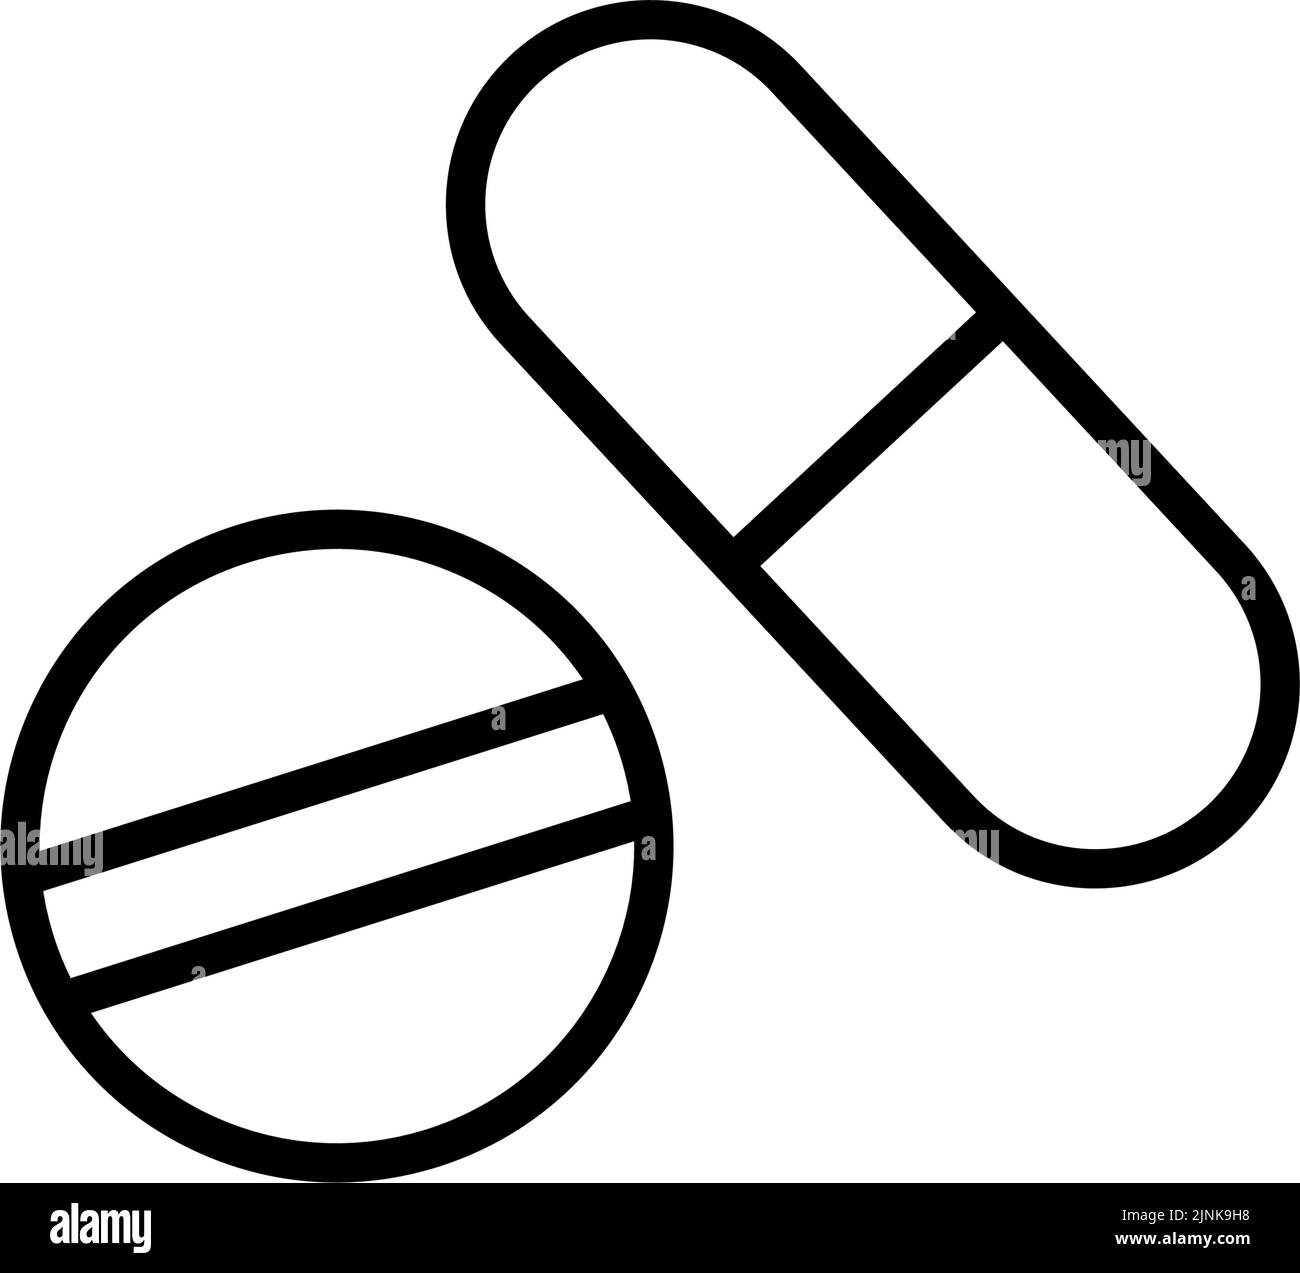 Semplice capsula e pillola icona, in bianco e nero Illustrazione Vettoriale